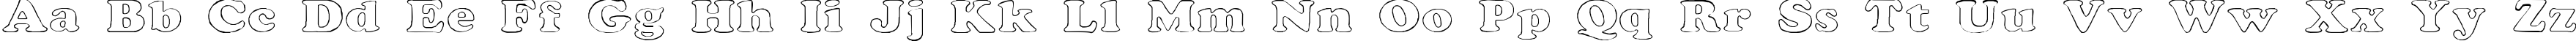 Пример написания английского алфавита шрифтом Rockletter Transparent